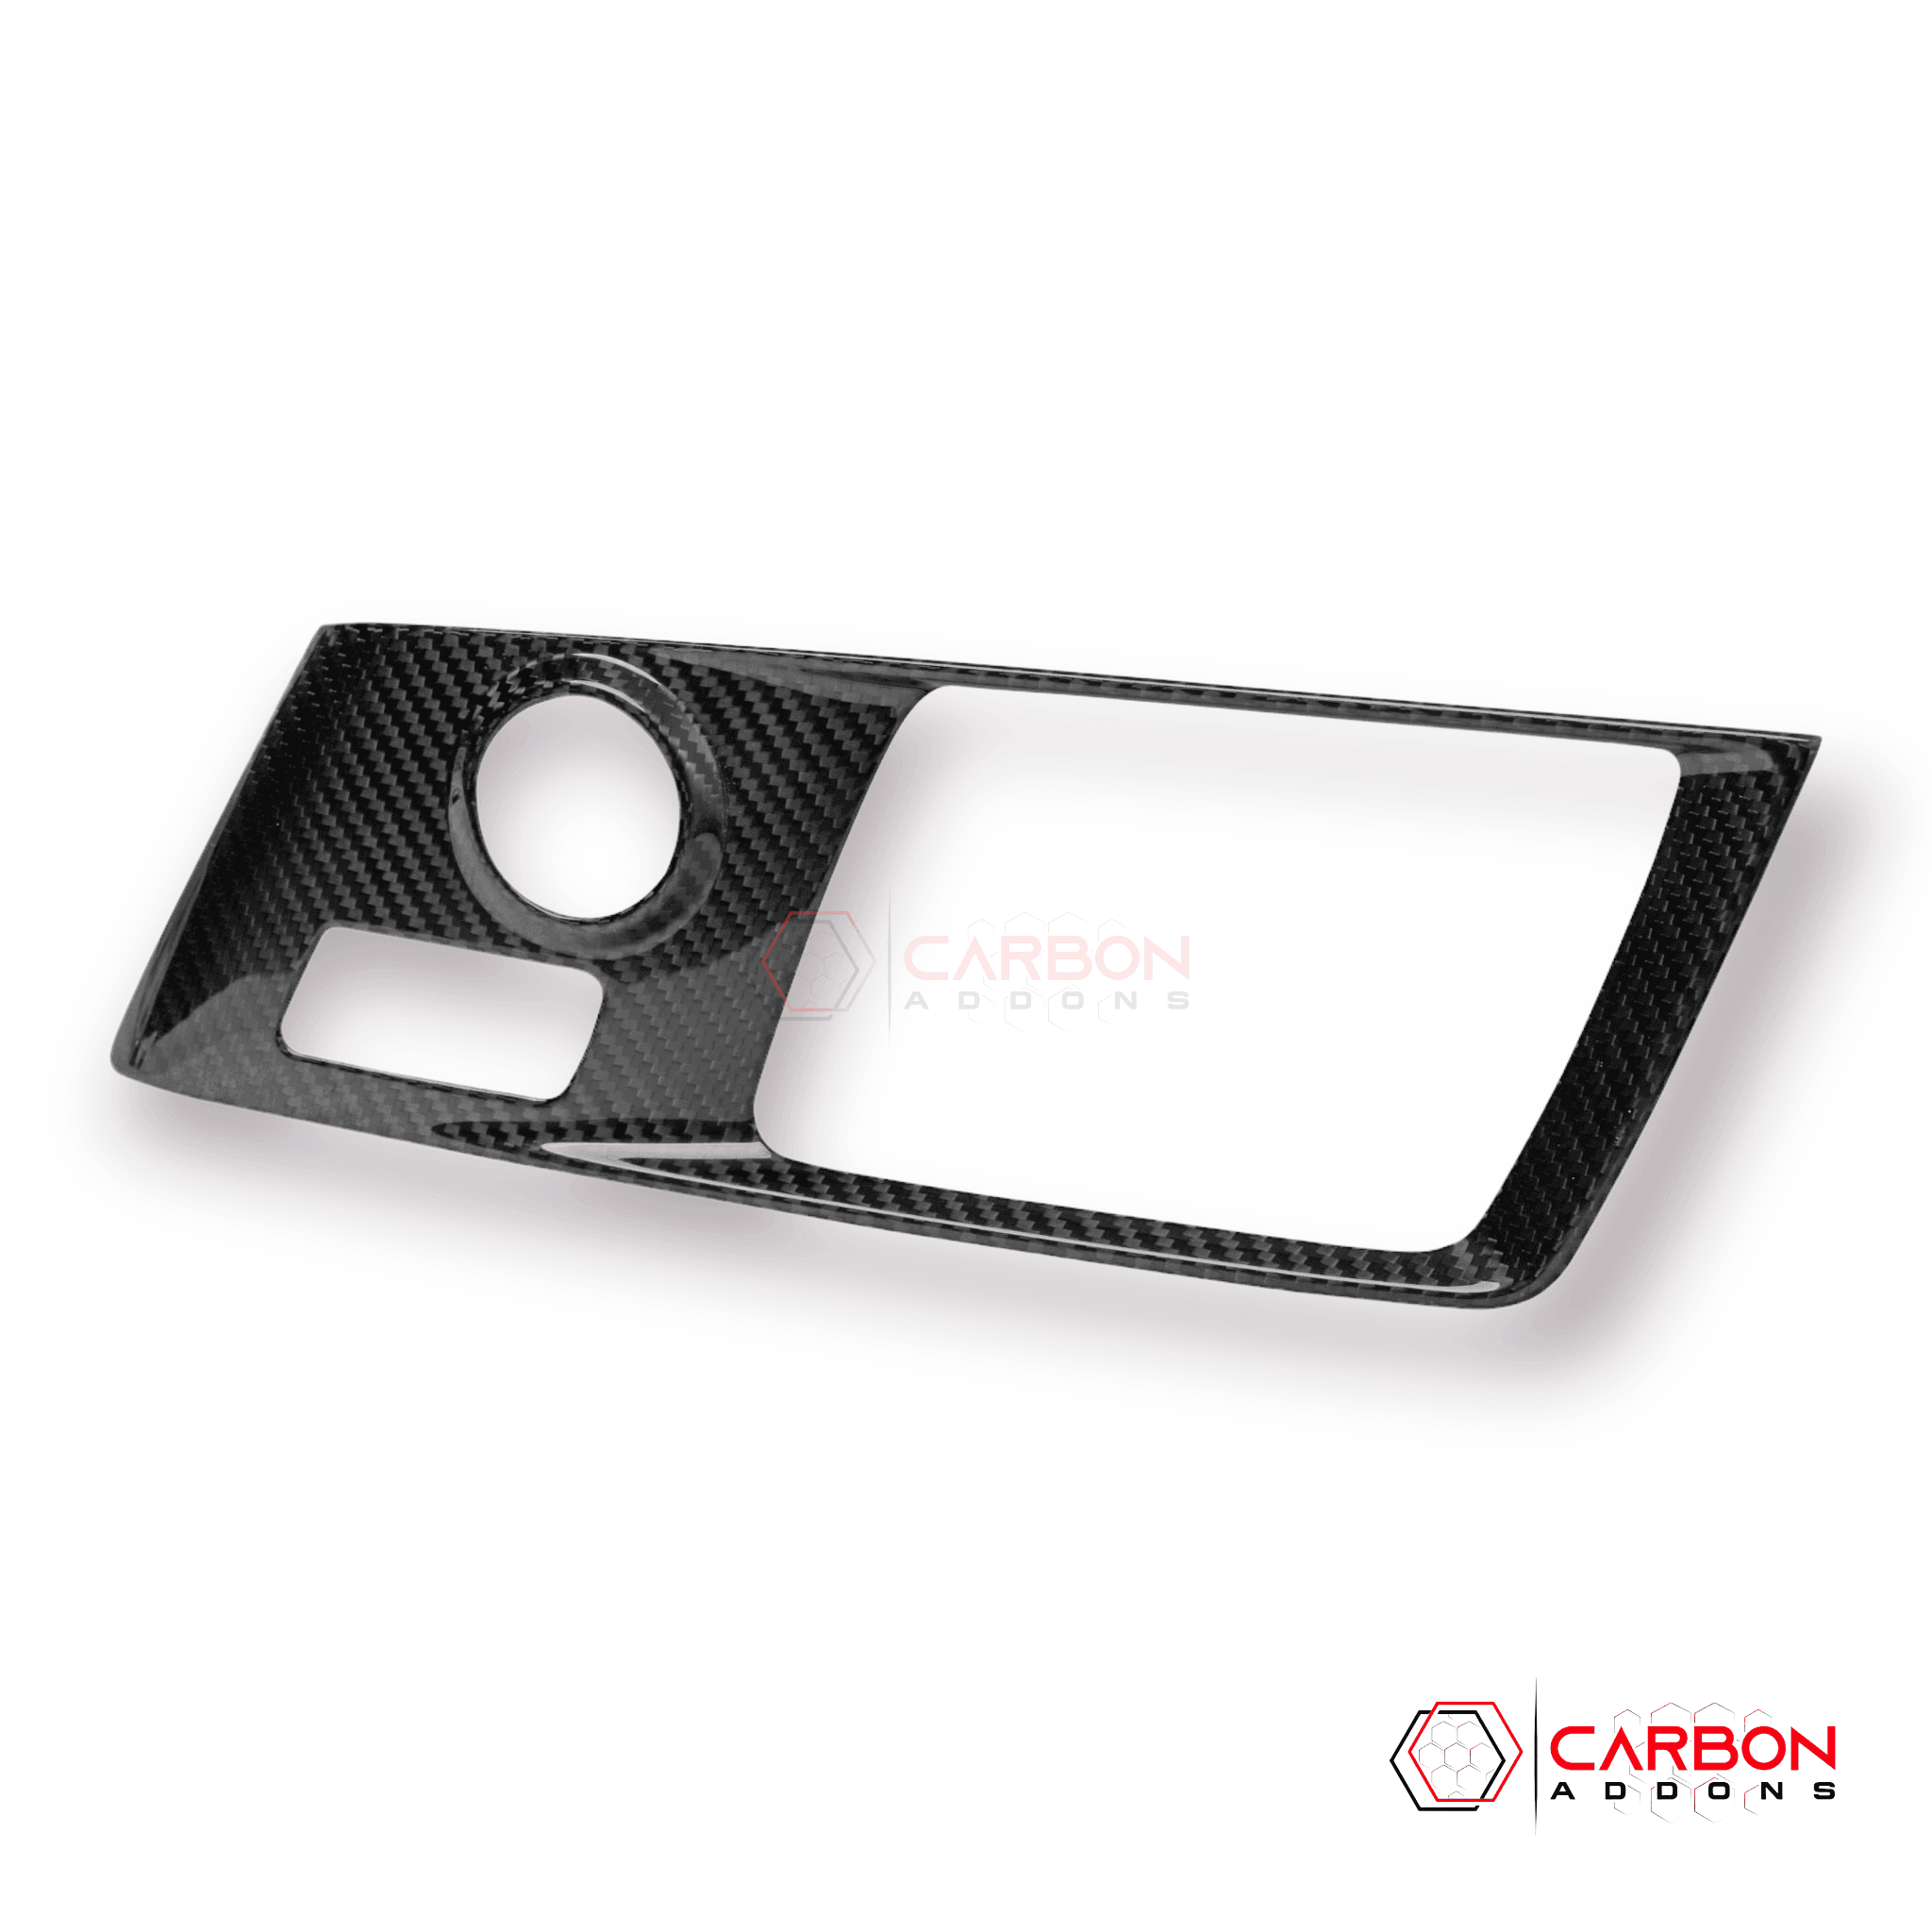 Corvette C7 Carbon Fiber Central Gear Shift Panel Trim Cover | 2014-2019 Chevrolet Corvette C7 - carbonaddons Carbon Fiber Parts, Accessories, Upgrades, Mods